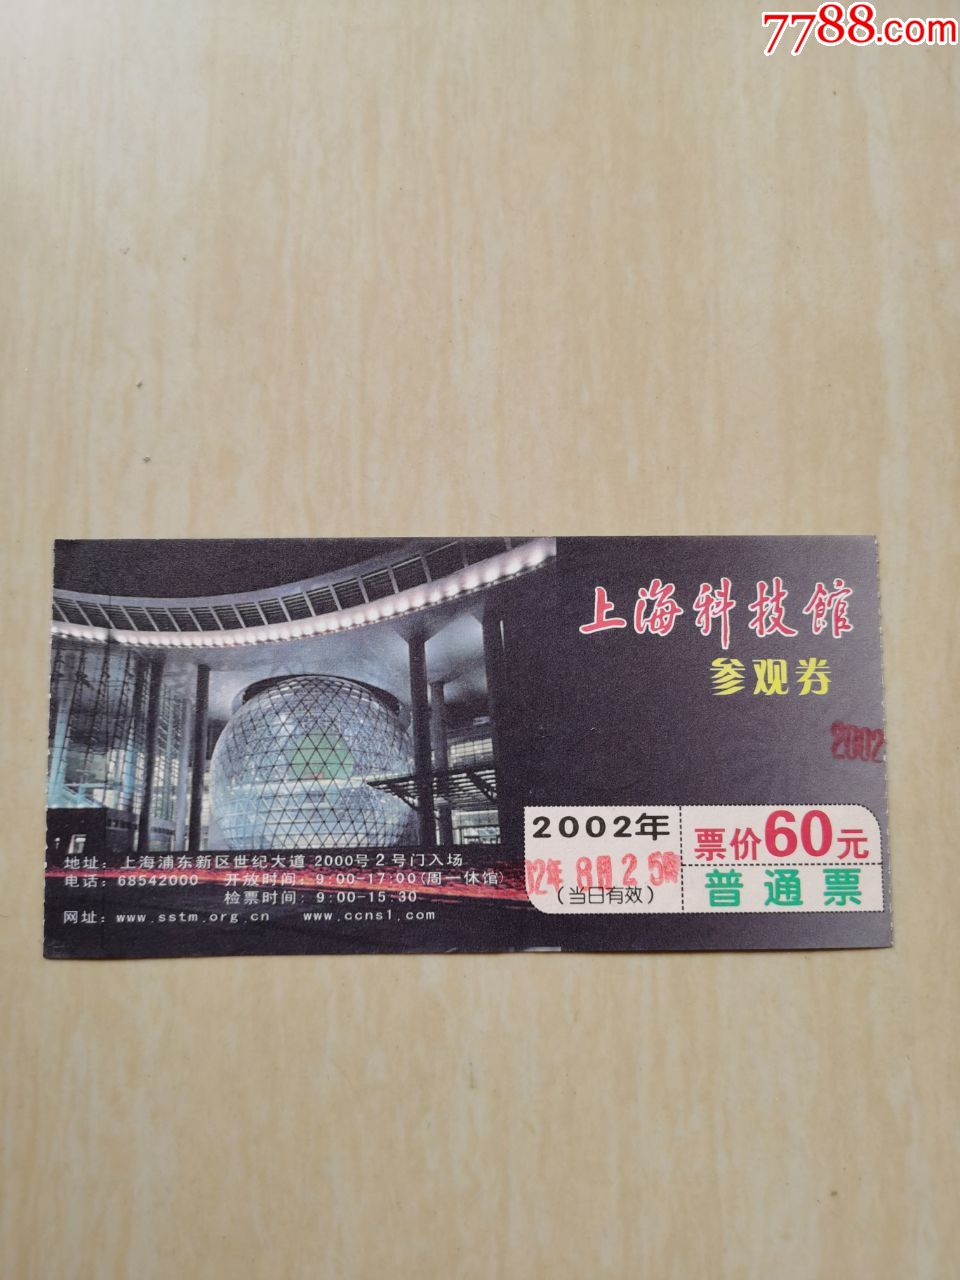 上海科技馆参观券,普通票,2002年,面值60元